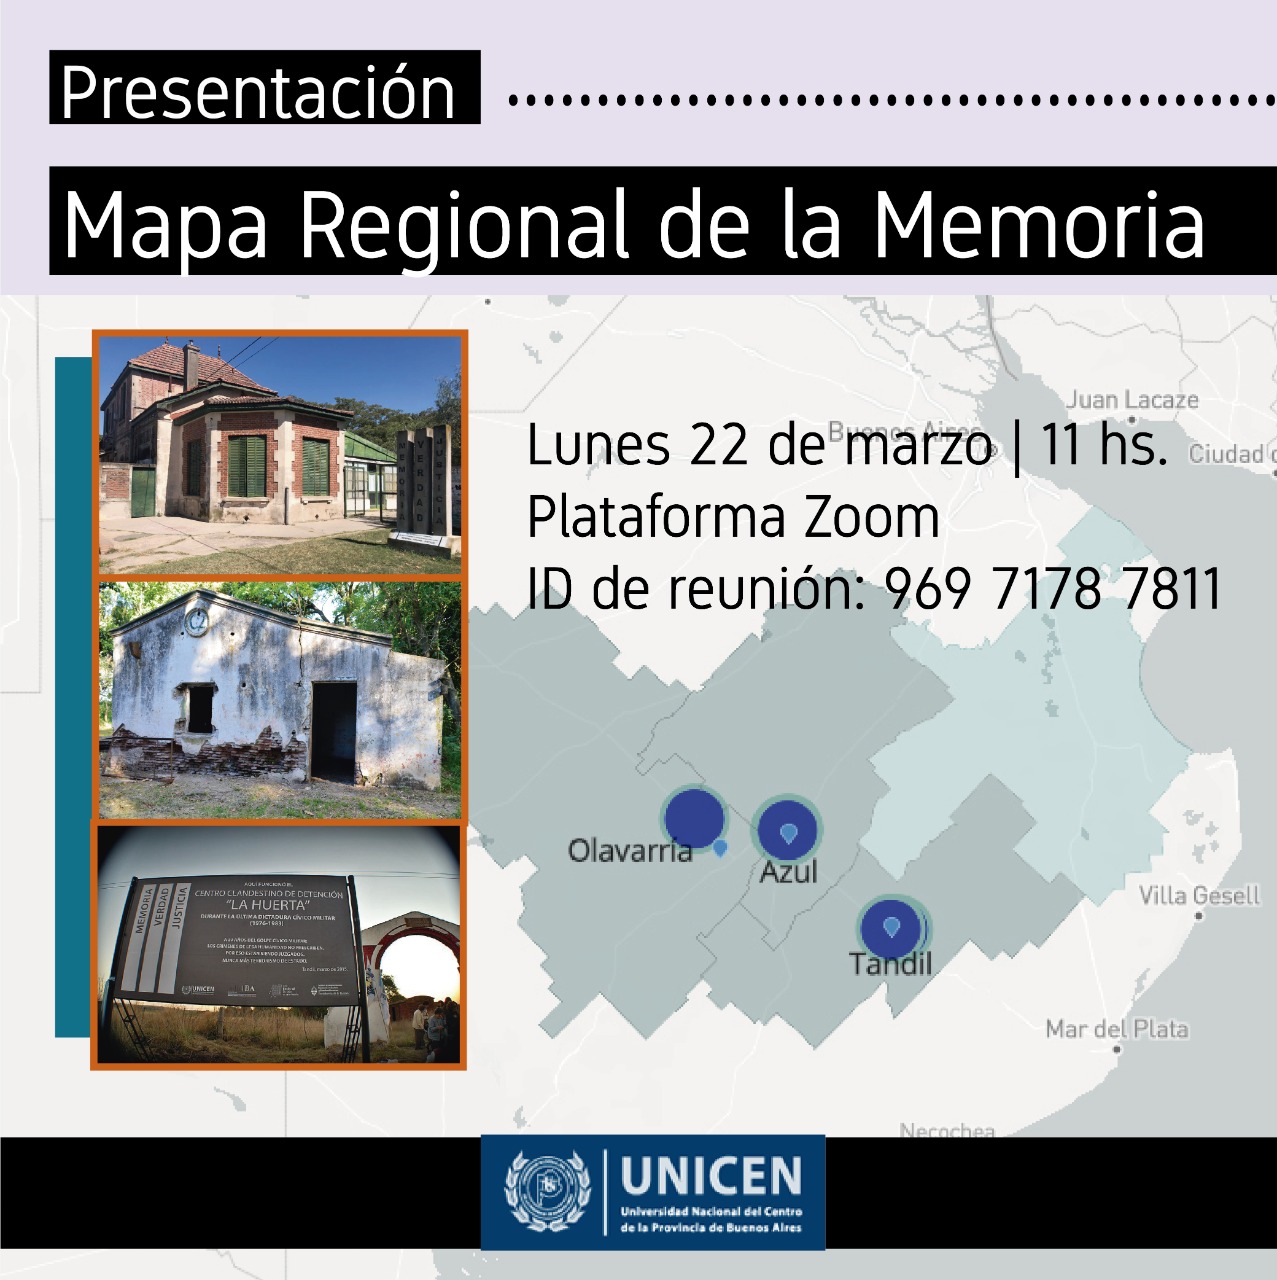 Presentación del Mapa Regional de la Memoria